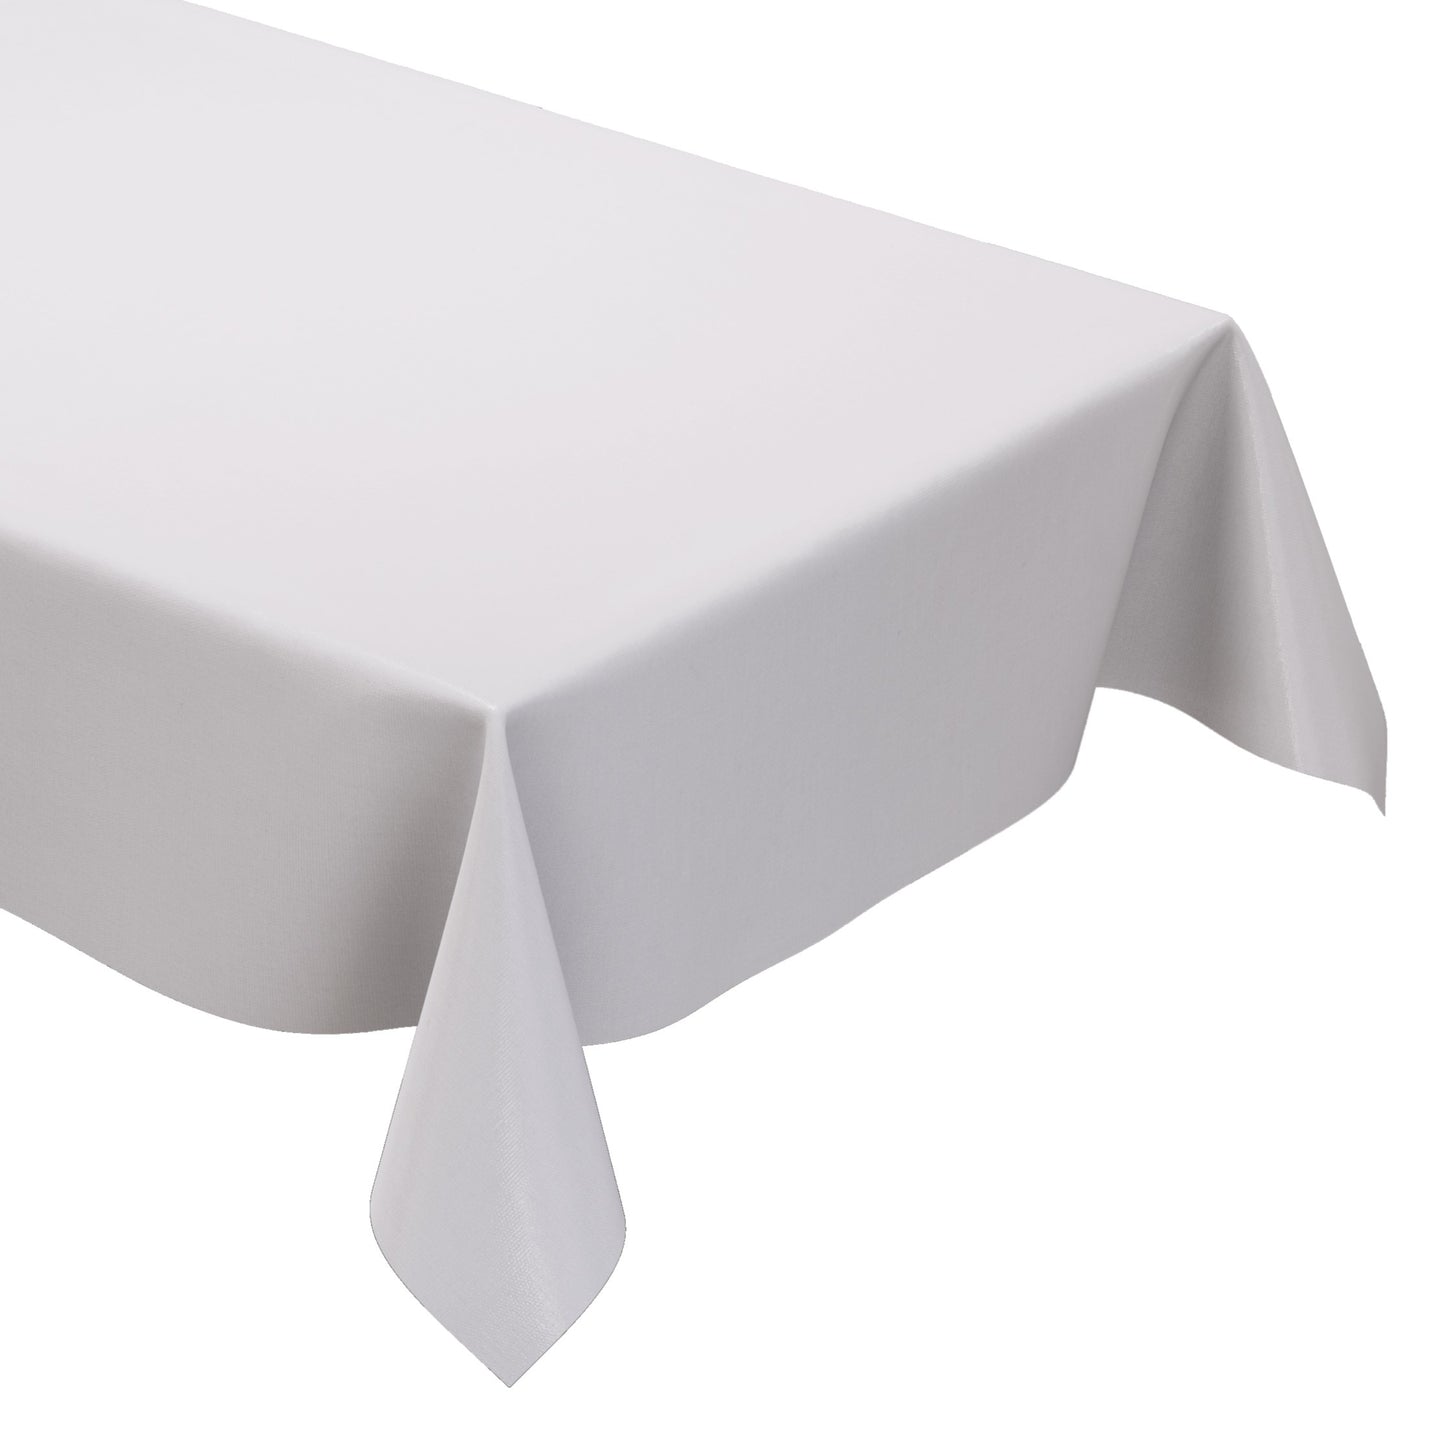 Wachstuch Tischdecke uni 0 weiß weiss einfarbig unifarben eckig rund oval